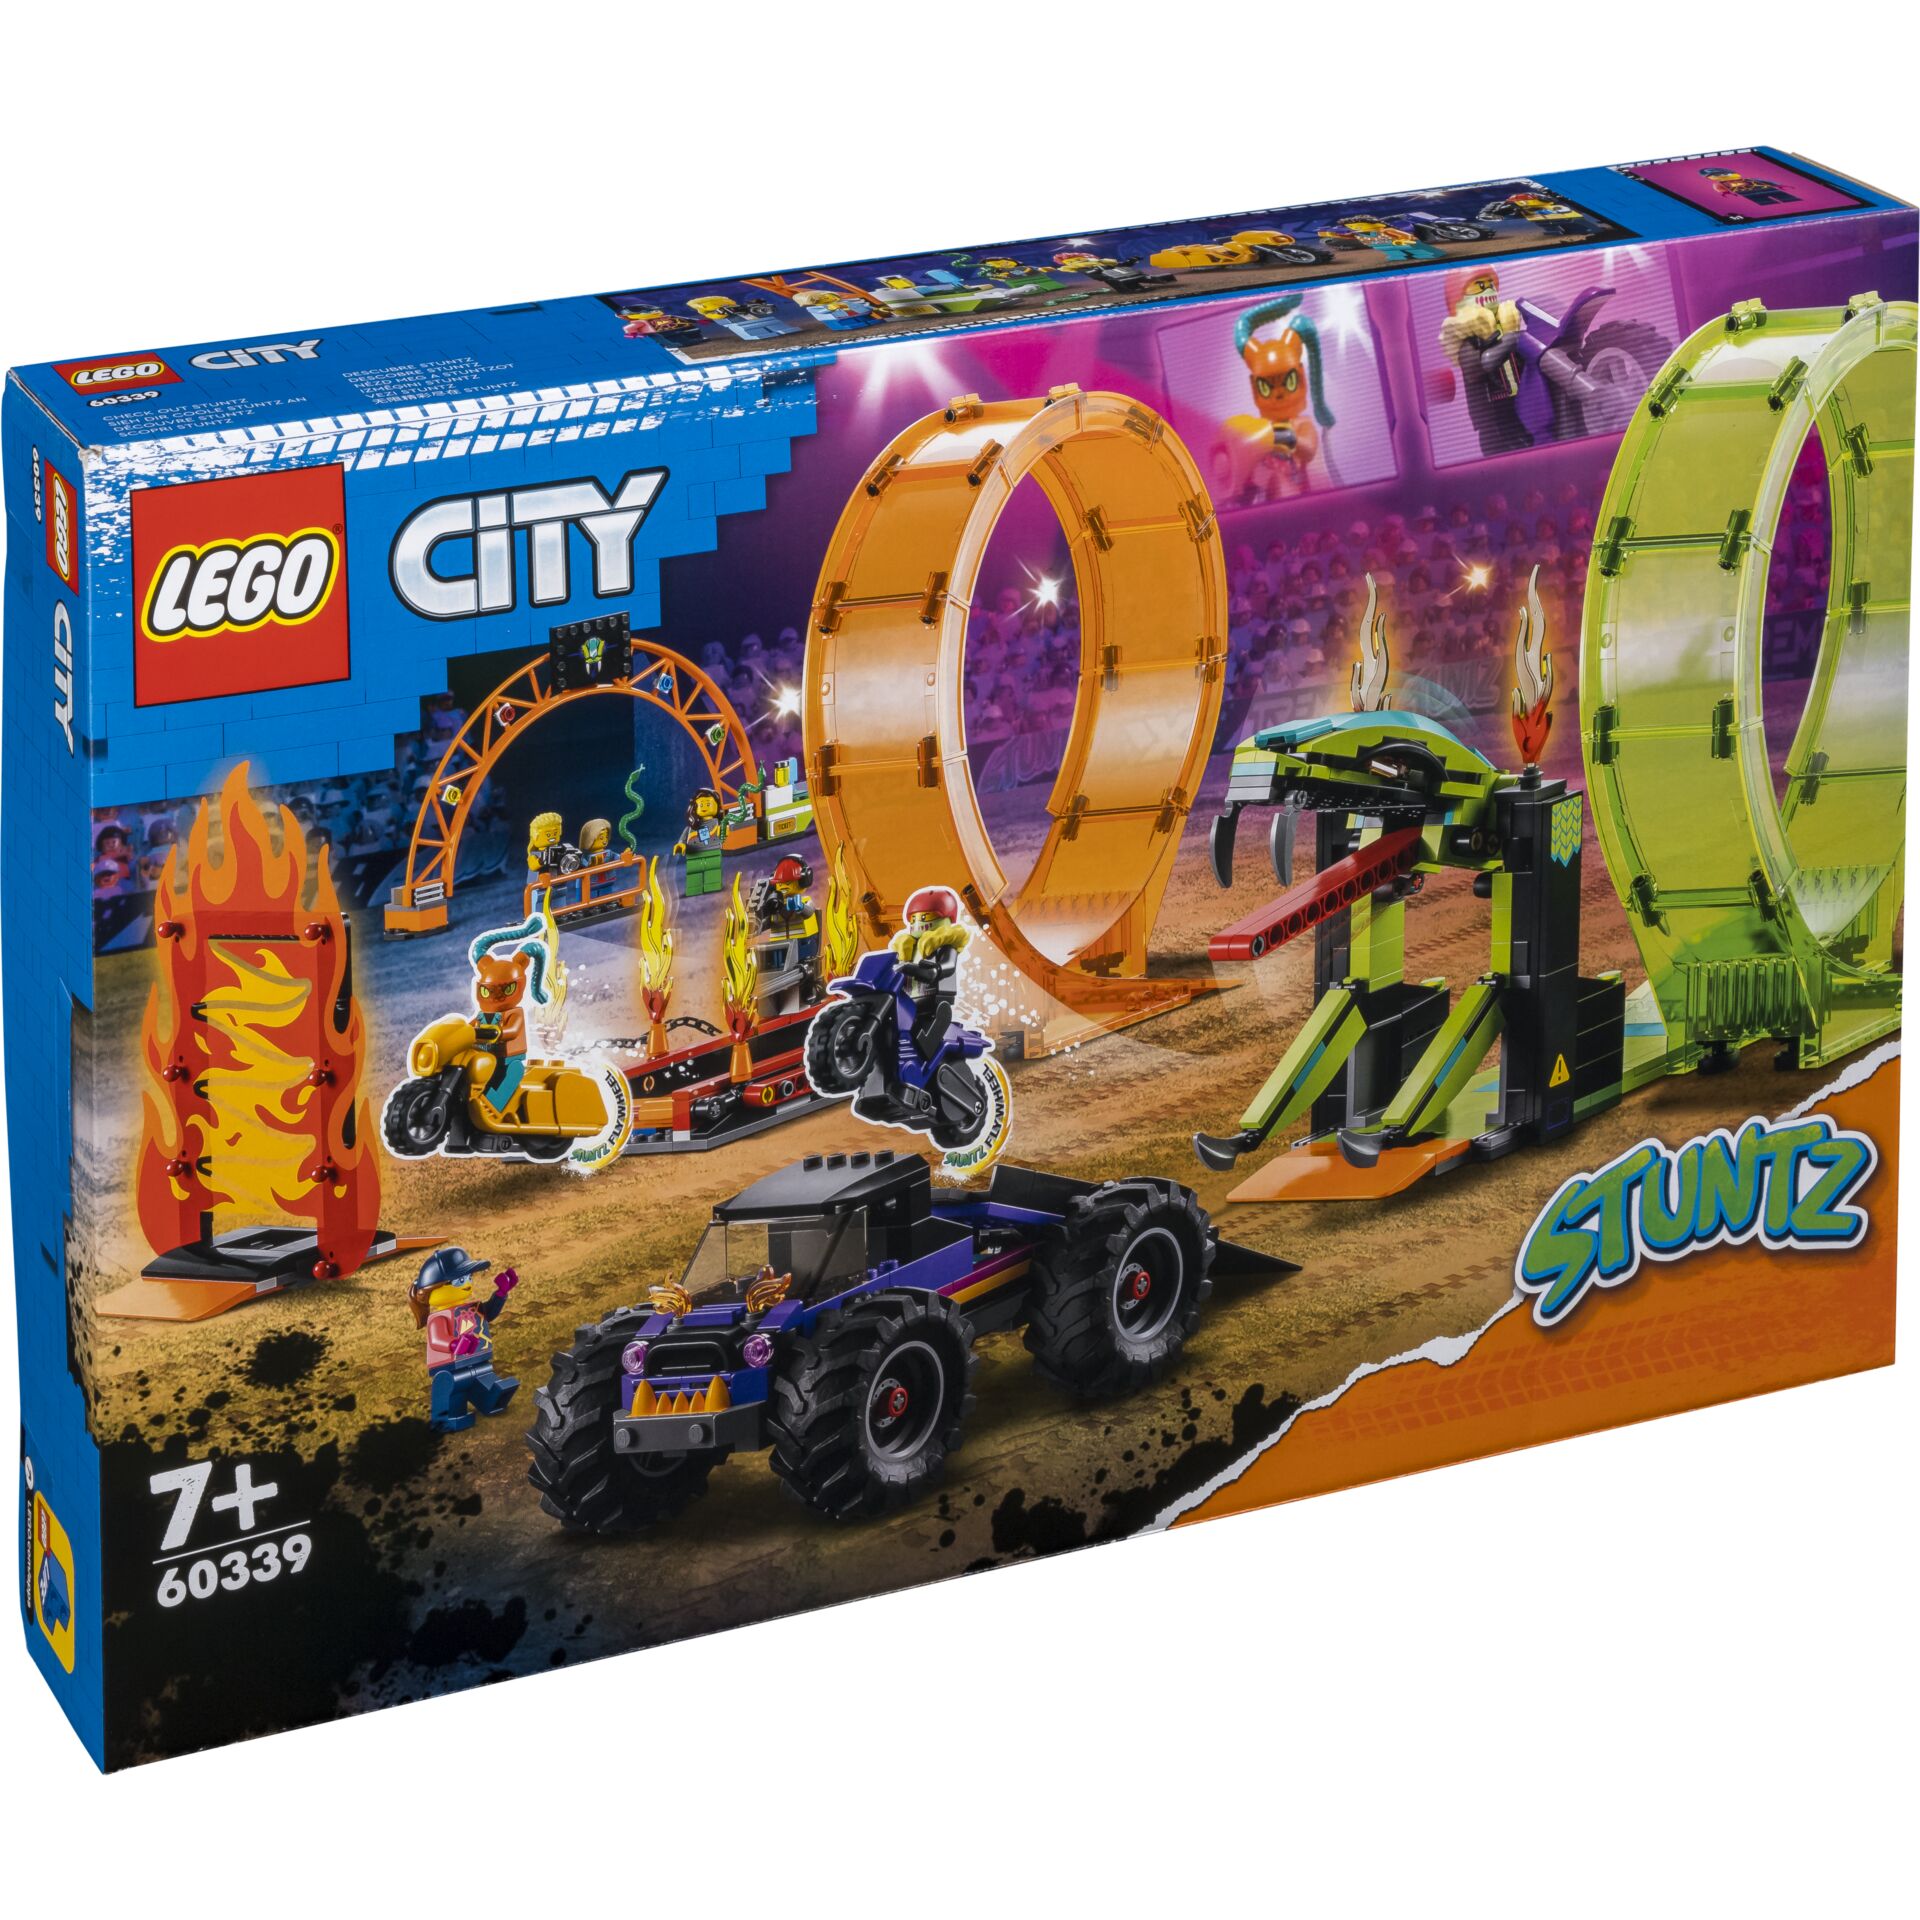 LEGO City Stuntz 60339 arena delle acrobazie